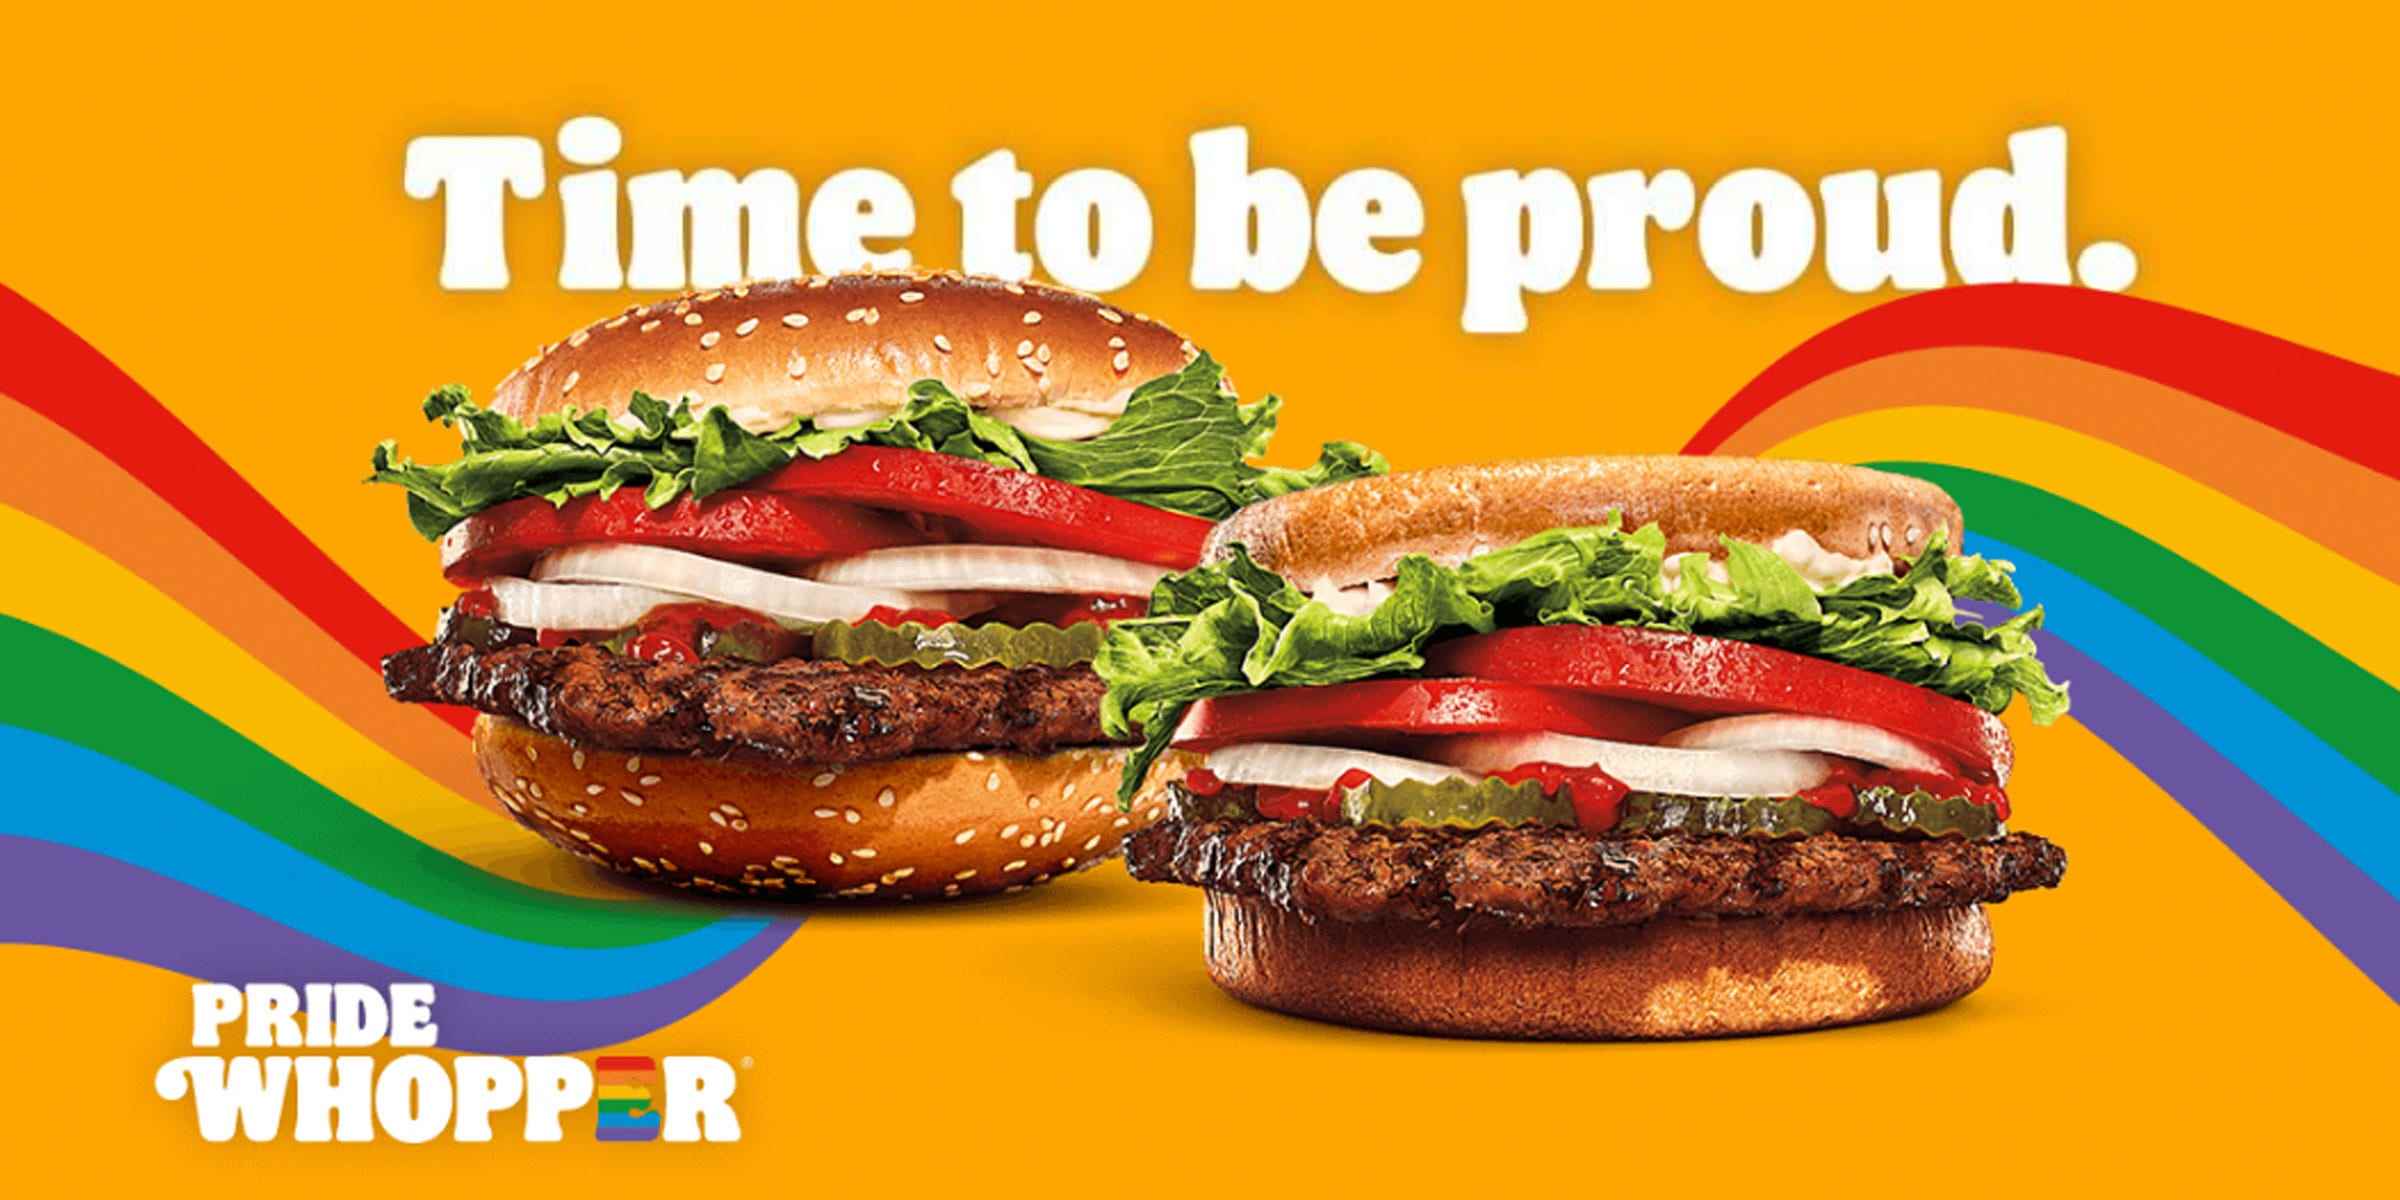 Werbung von Burger King für seinen „Pride Whopper“